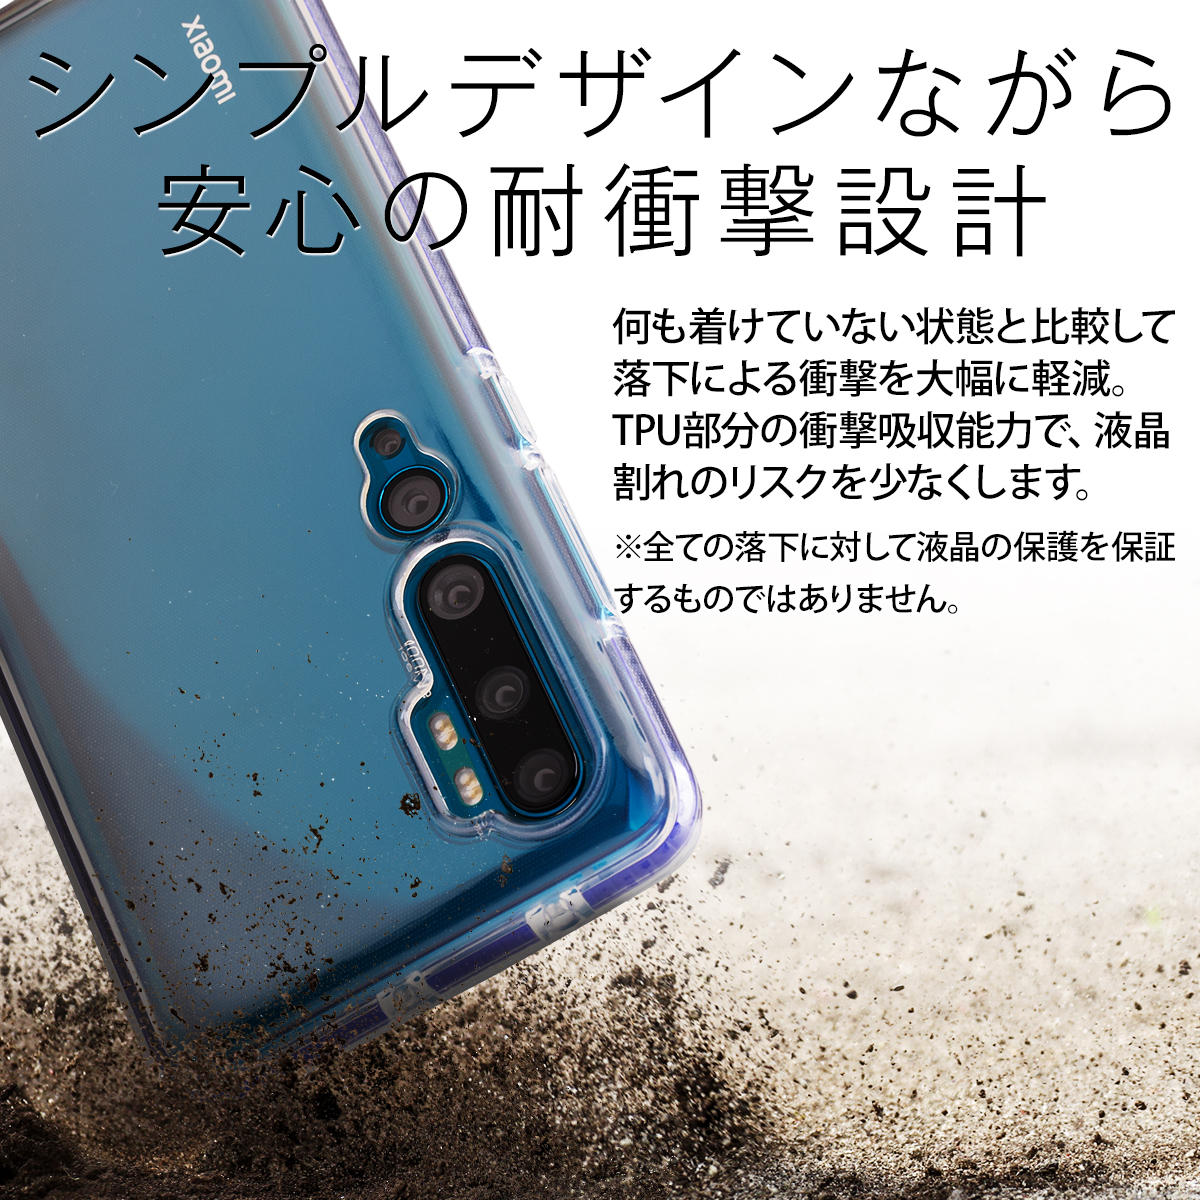 Xiaomi Mi Note 10 耐衝撃TPUクリアケース